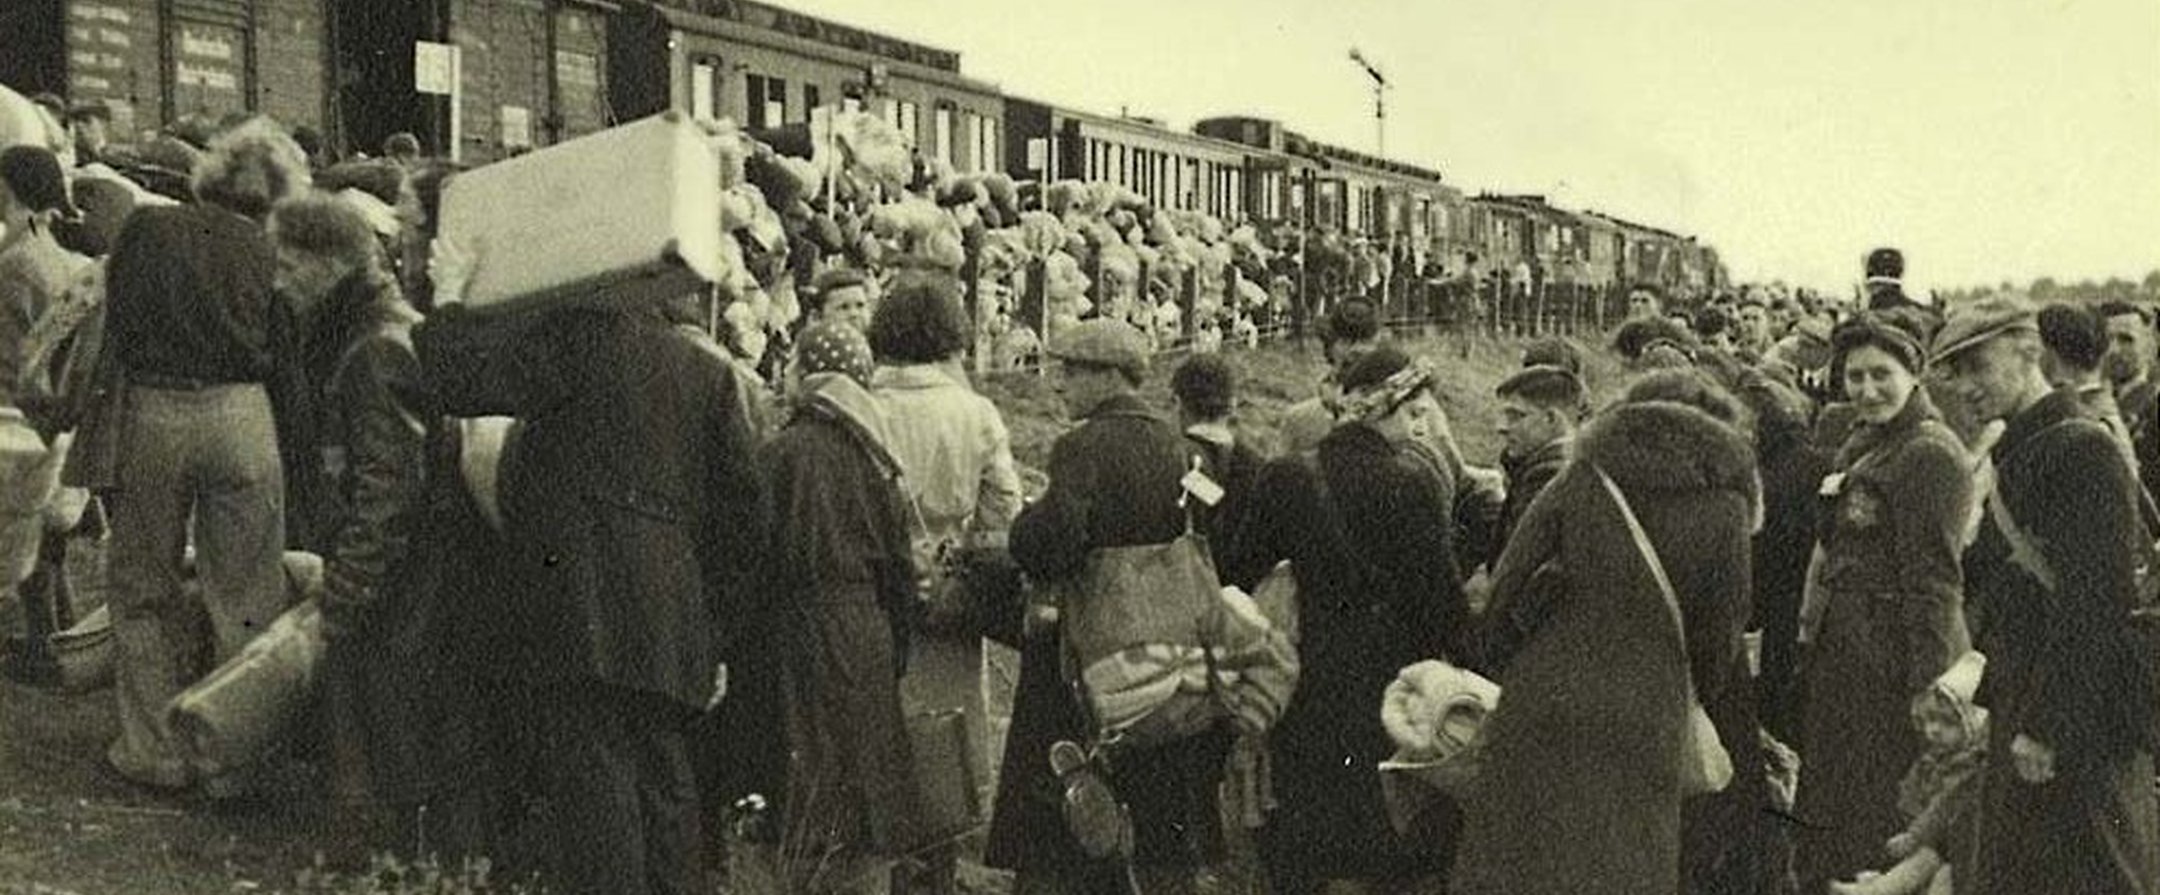 Juden auf dem Weg zur Deportation nach Auschwitz in den Niederlanden